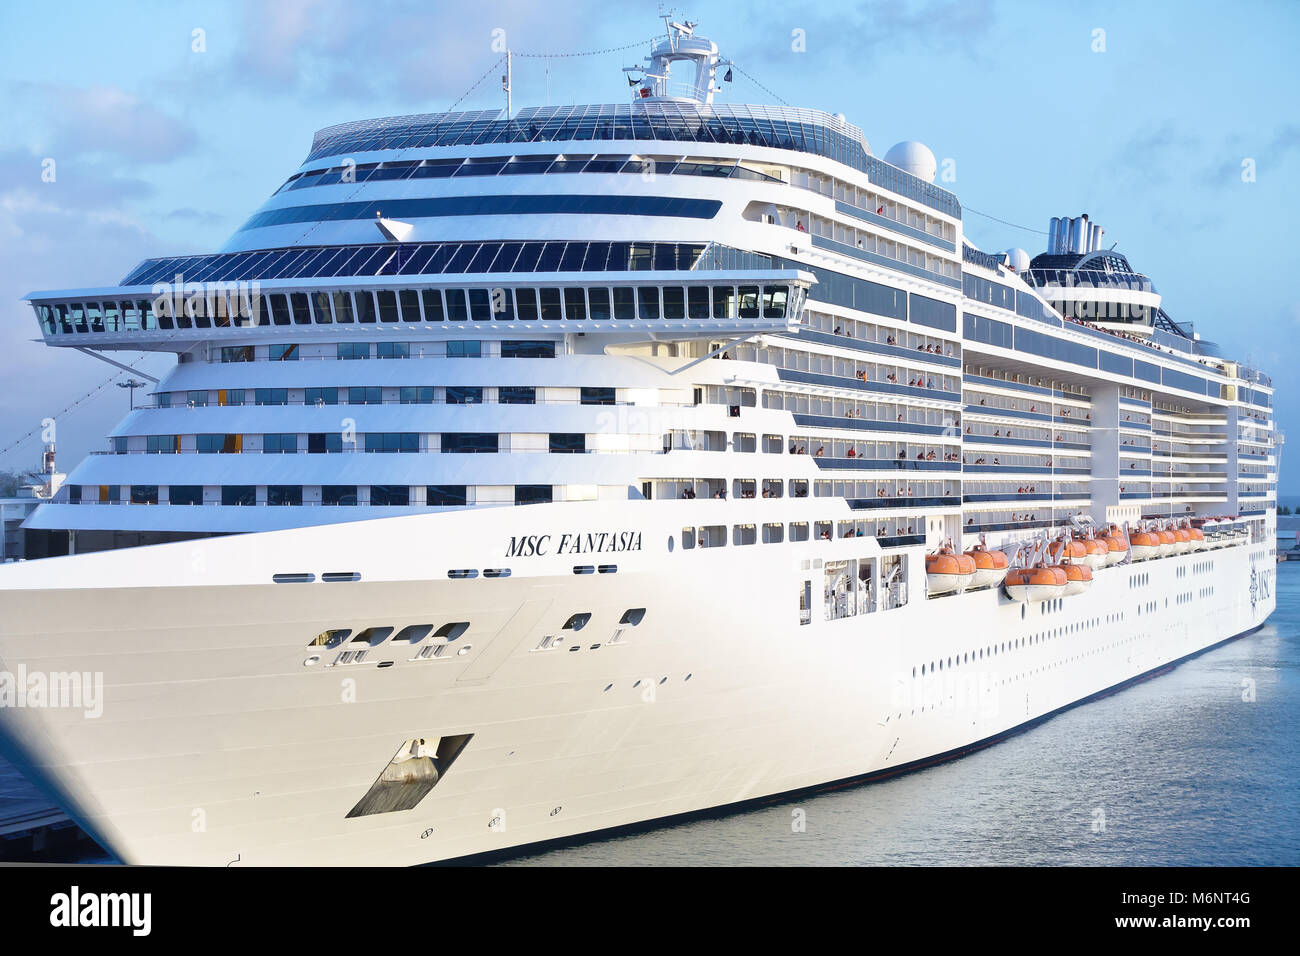 Msc fantasia cruise ship immagini e fotografie stock ad alta risoluzione -  Alamy